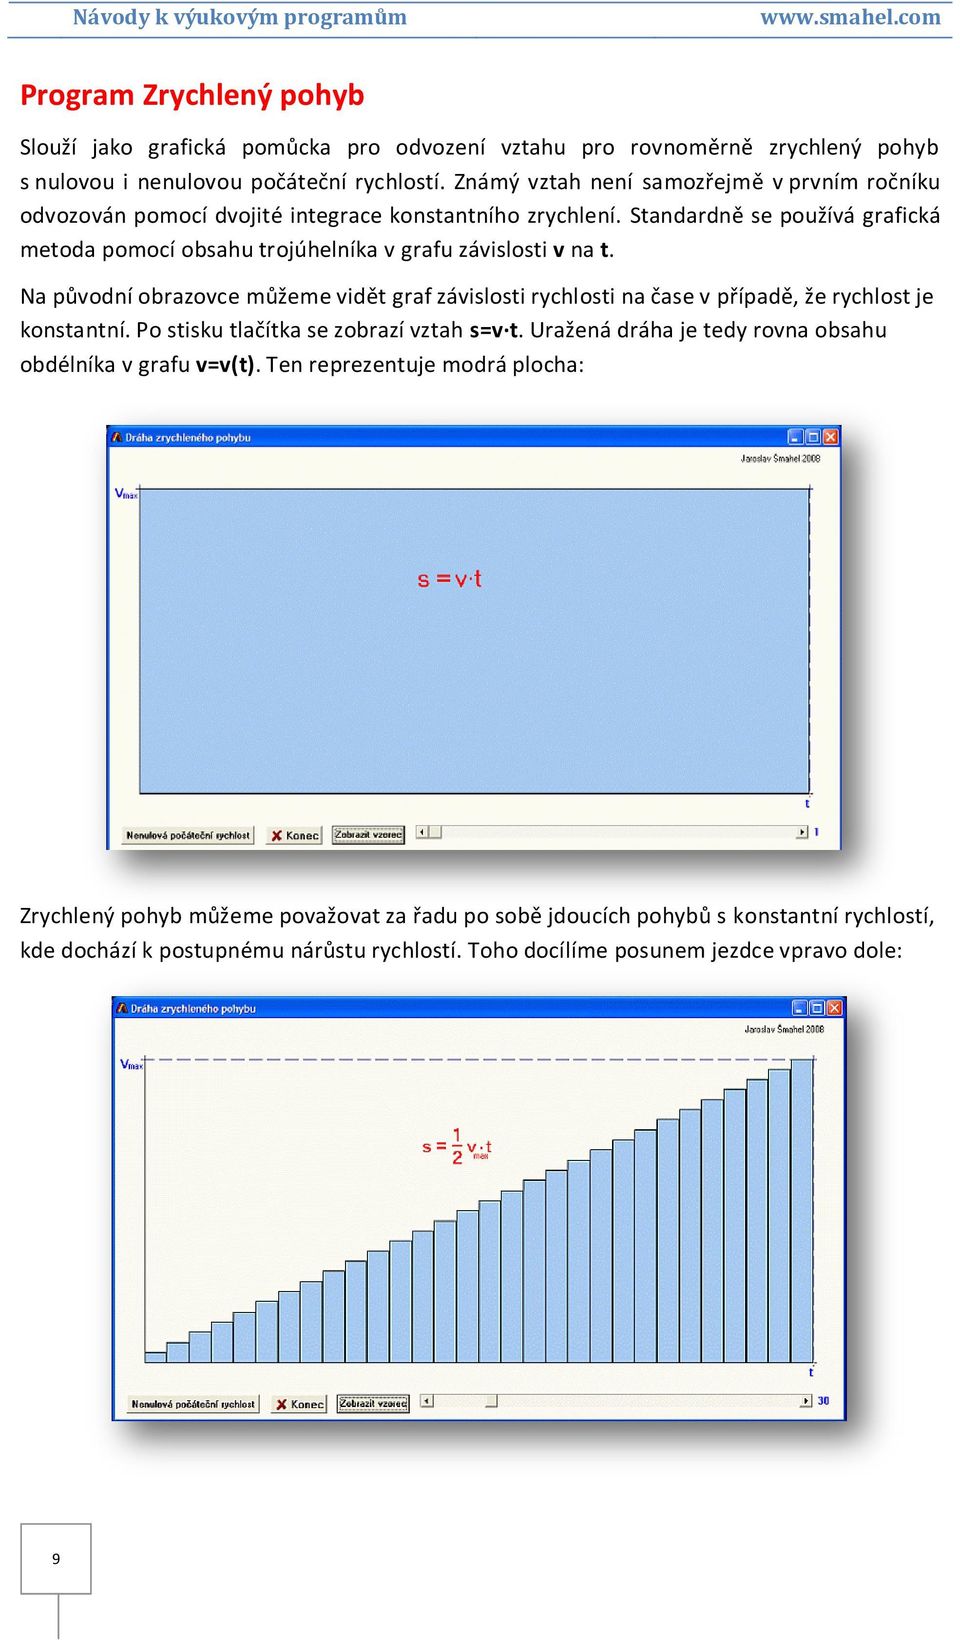 Standardně se používá grafická metoda pomocí obsahu trojúhelníka v grafu závislosti v na t.